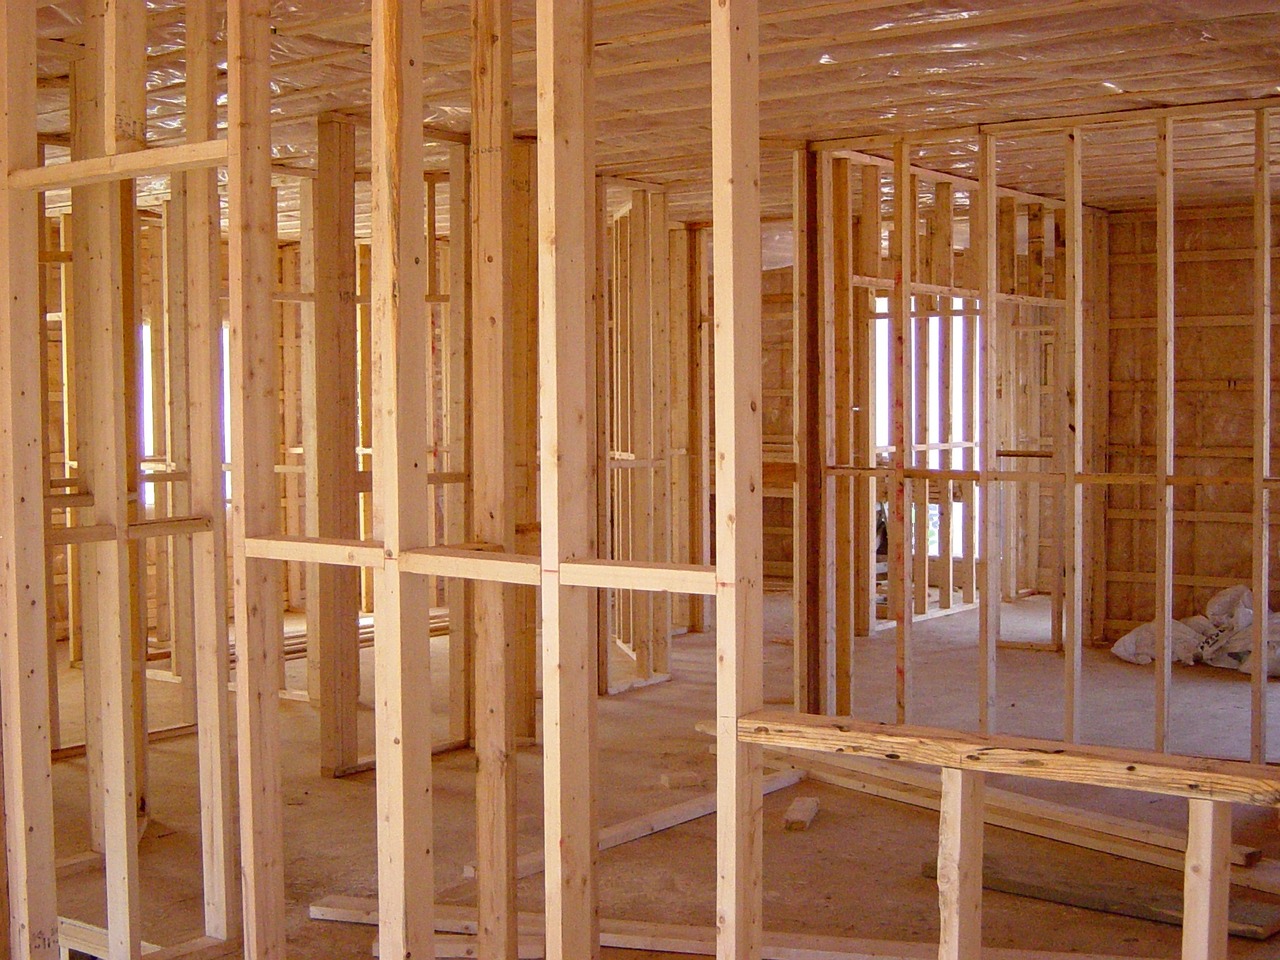 Pozwolenie na budowę domu krok po kroku – jak uzyskać zgodę na budowę swojego wymarzonego domu?